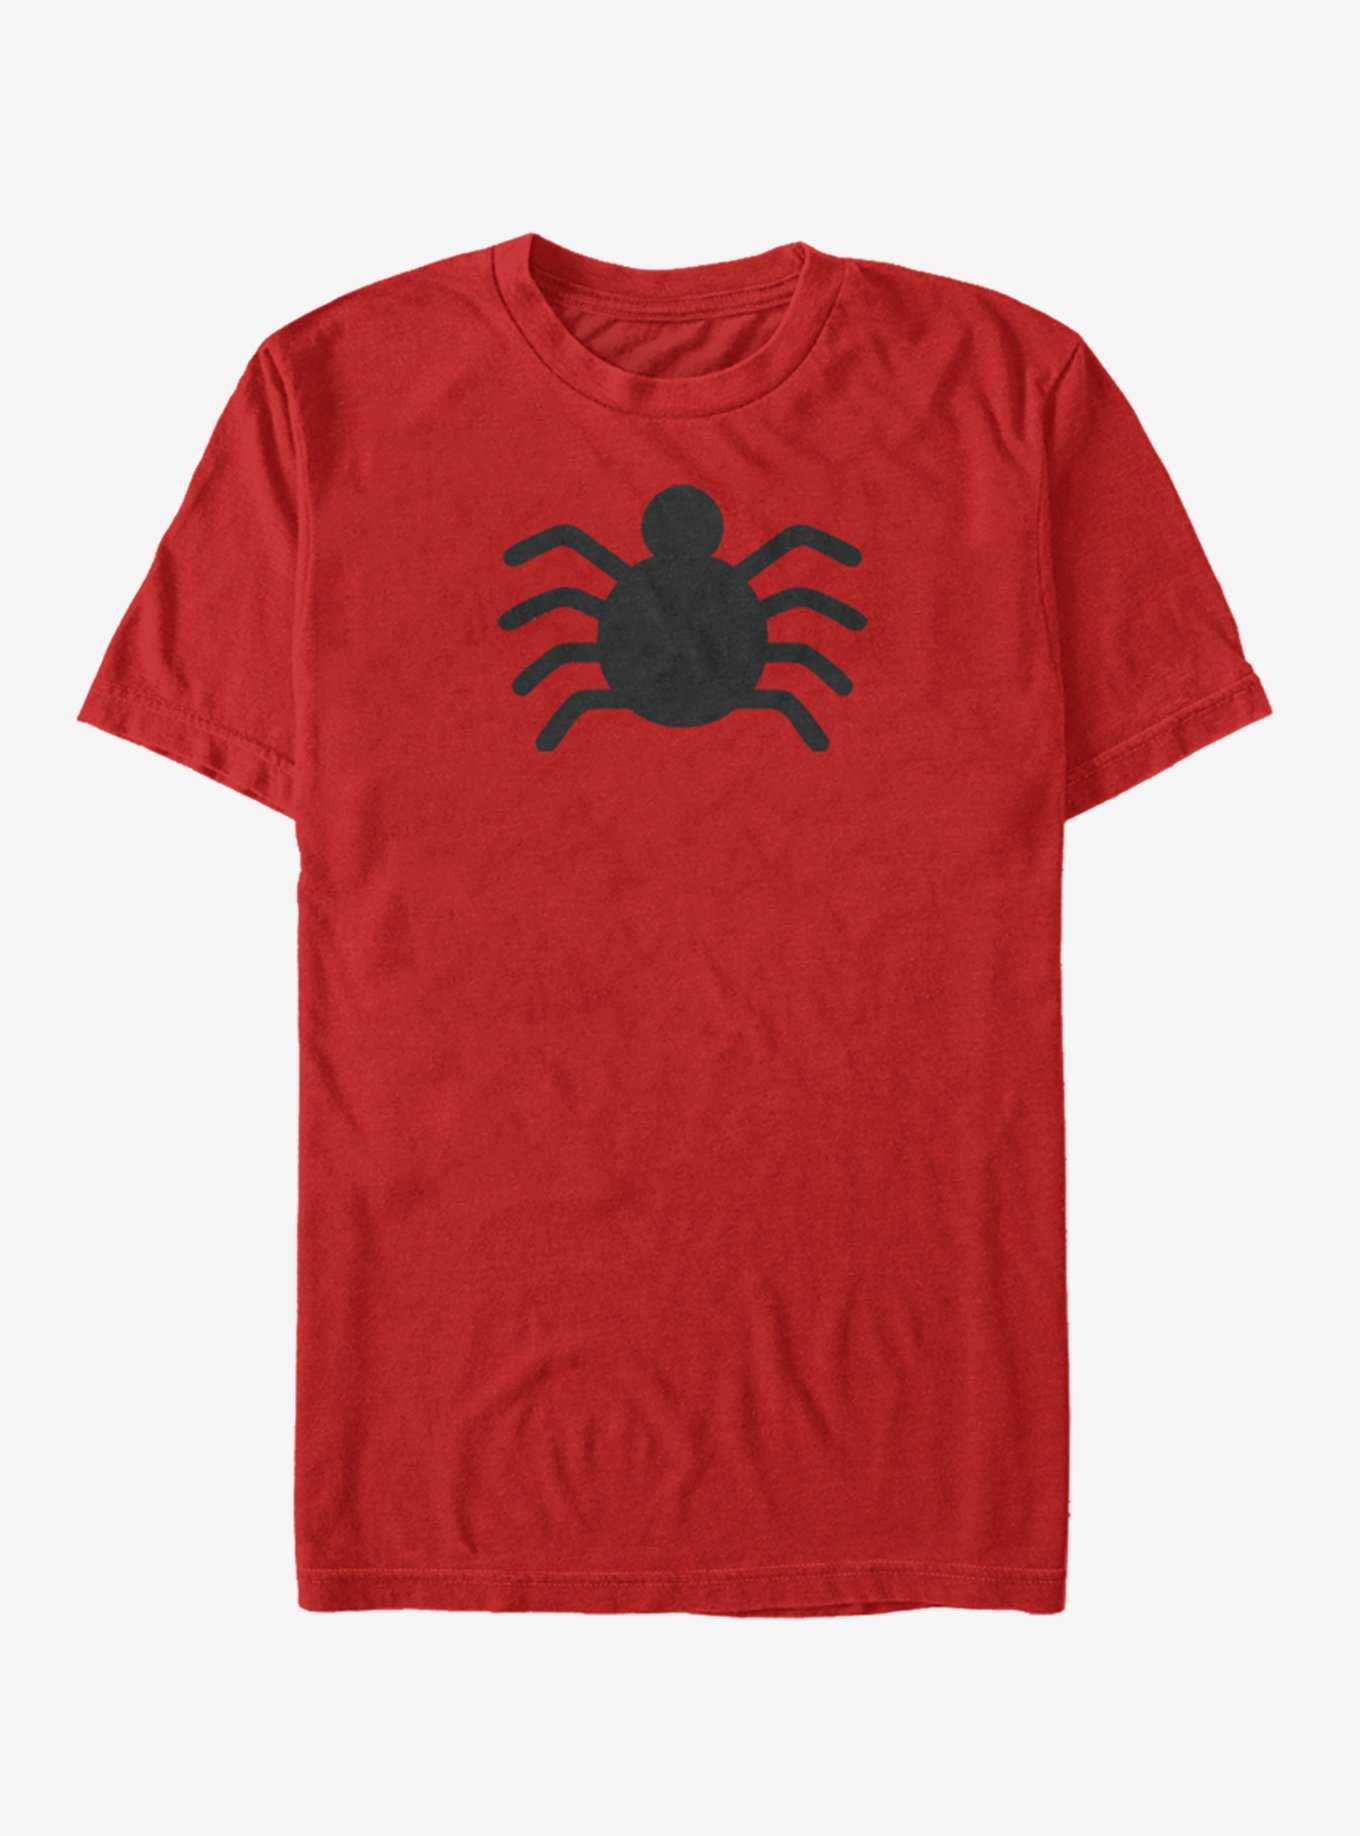 Marvel Spider-Man OG Spider-Man Icon T-Shirt, , hi-res